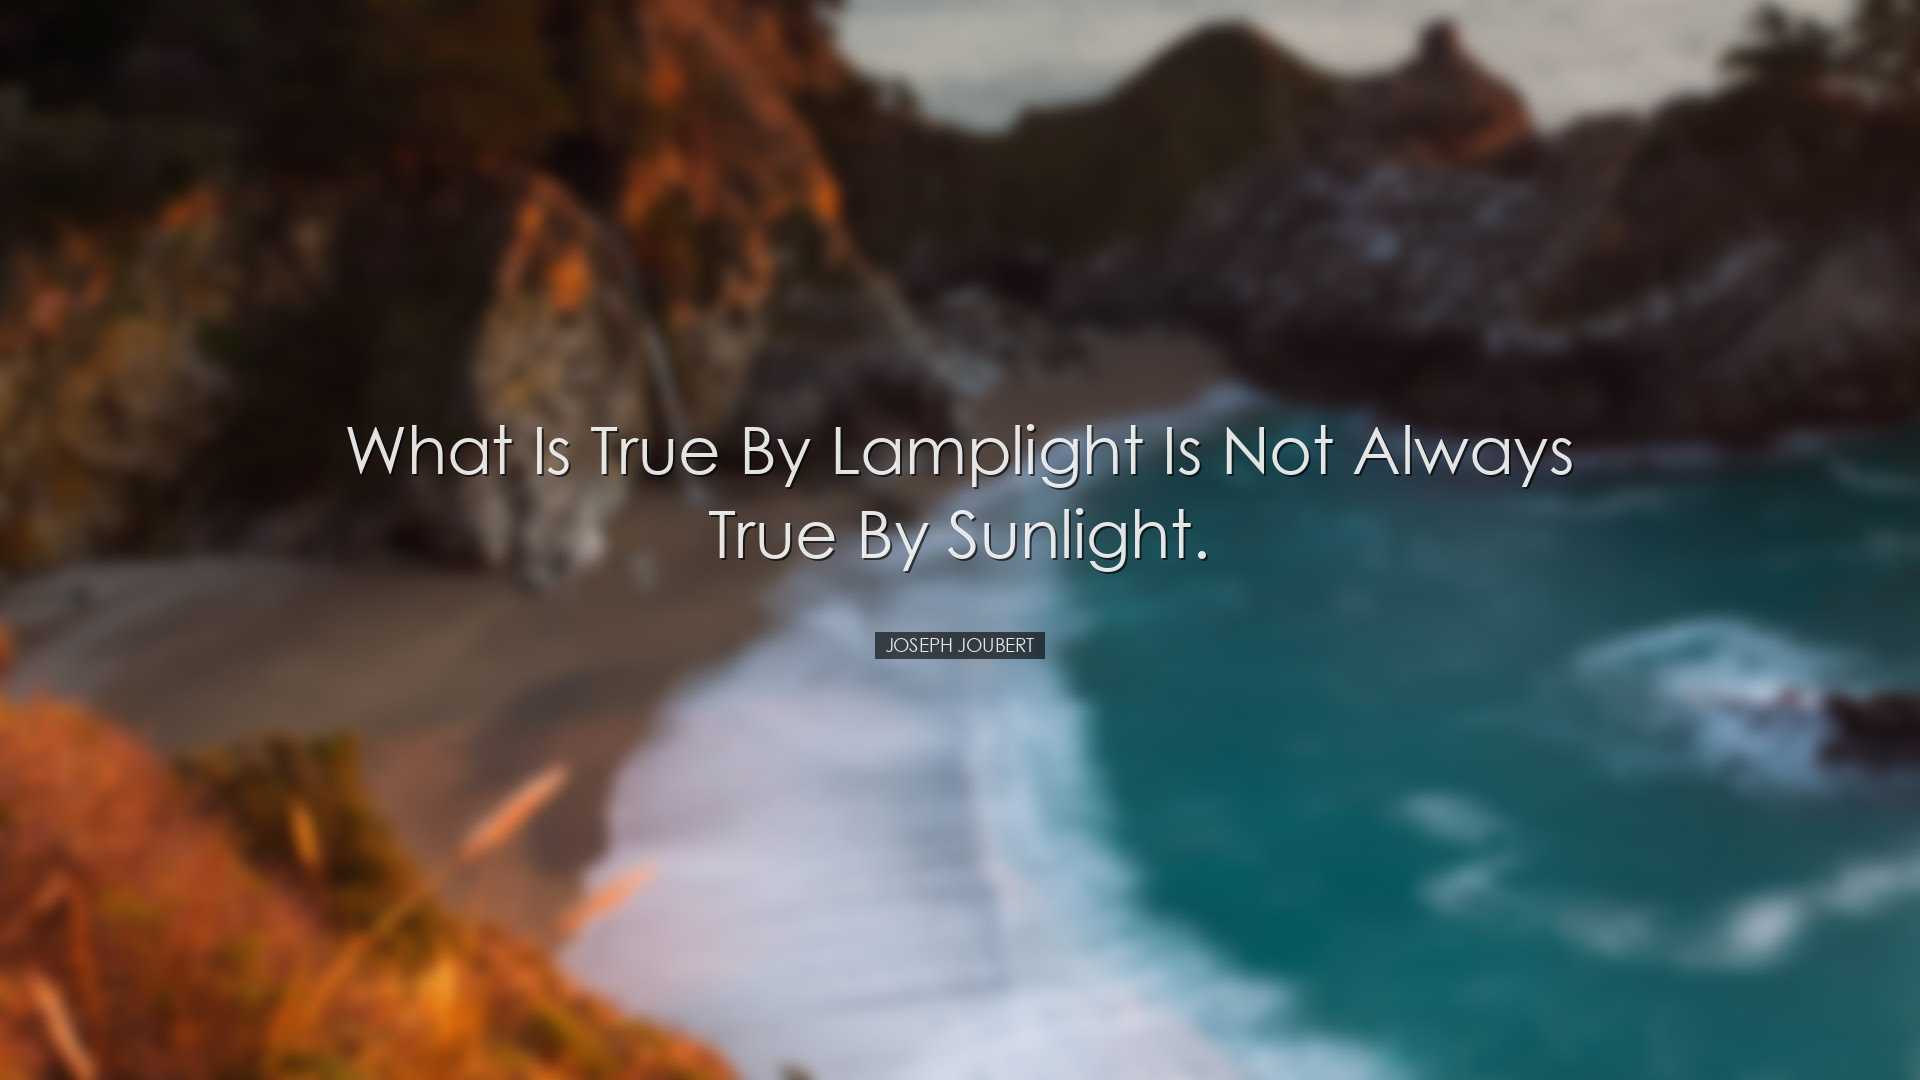 What is true by lamplight is not always true by sunlight. - Joseph